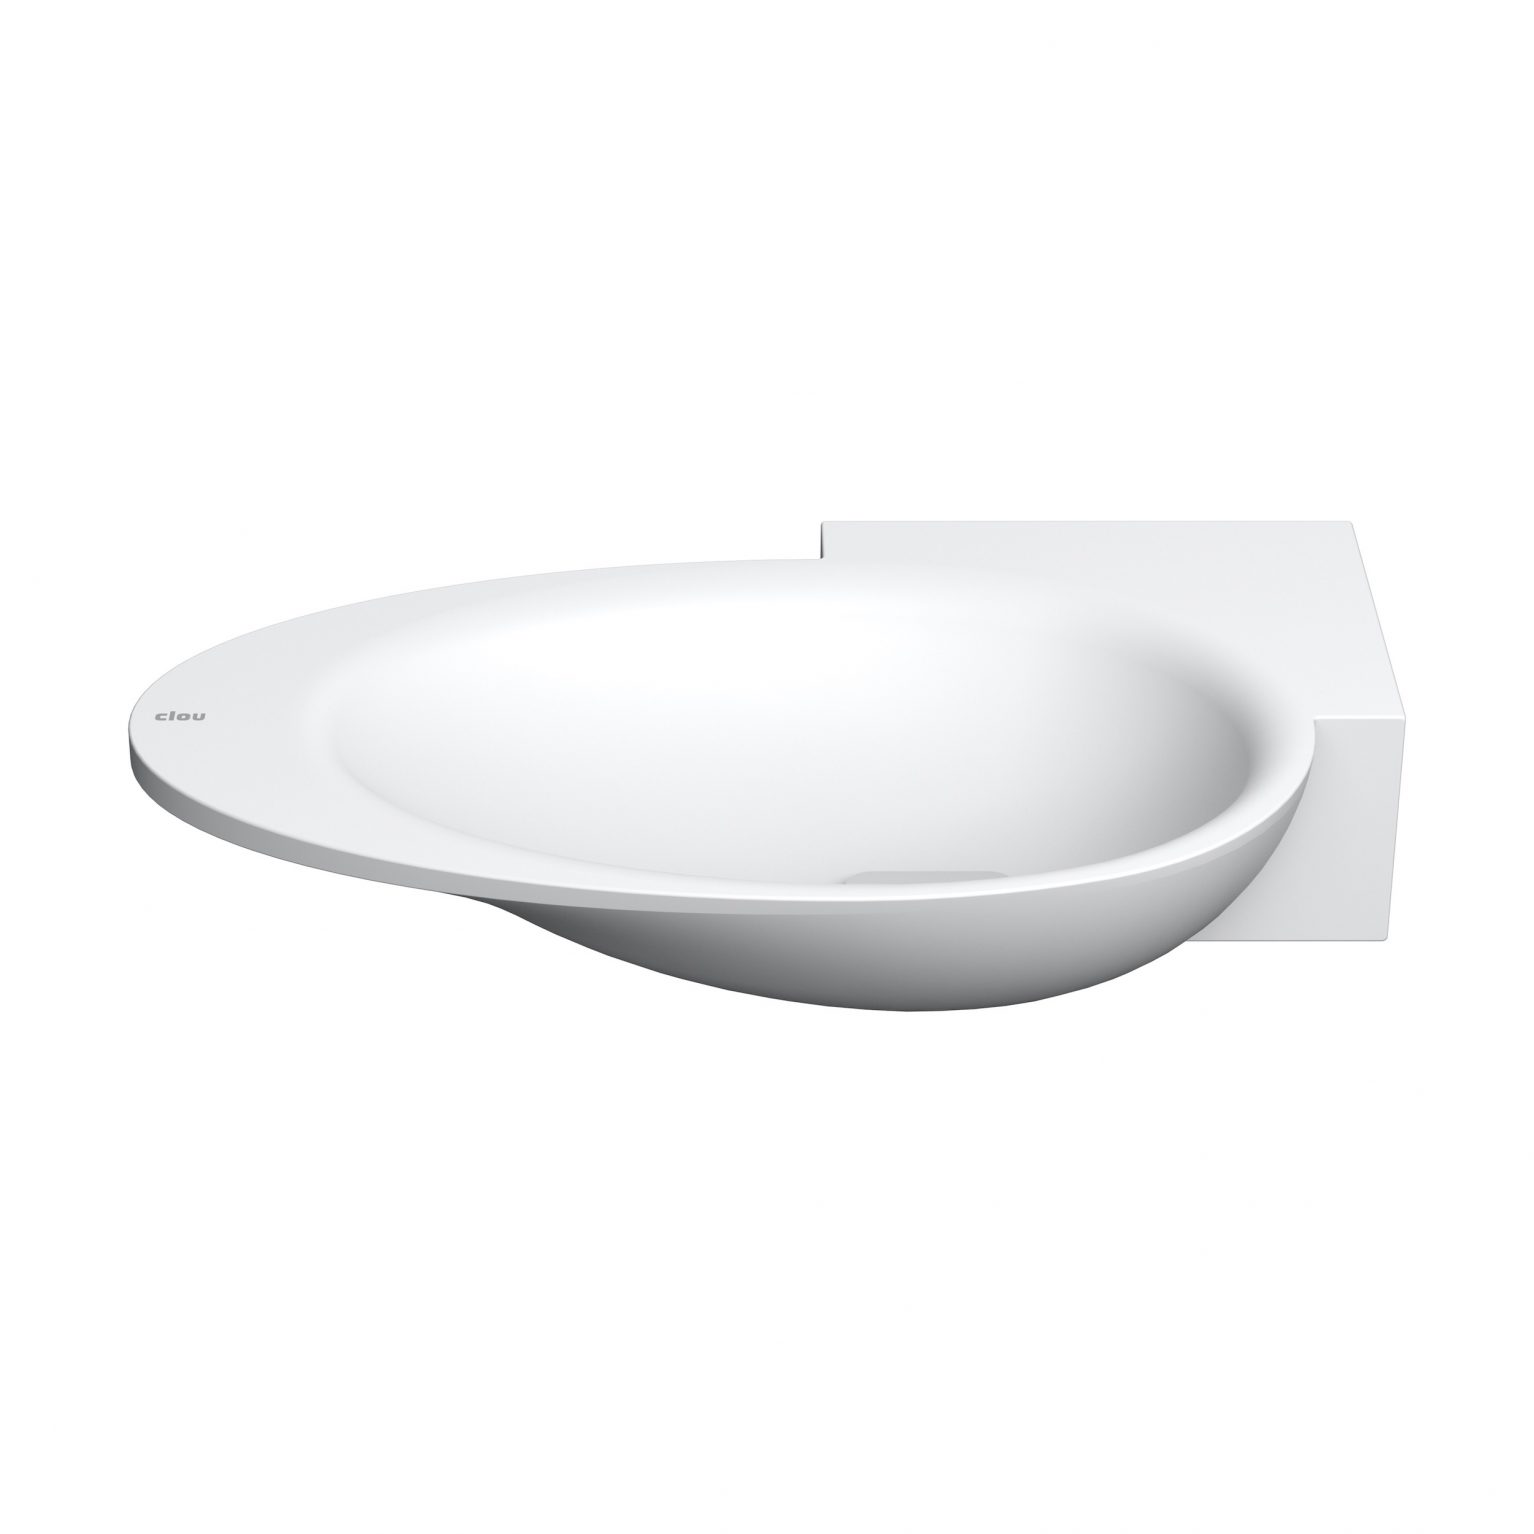 fontein-wastafel-aluite-toilet-badkamer-luxe-sanitair-First-rechts-clou-CL0310100-wasbakje-met-afvoer-plug-kranenbank-voorbewerkt-kraangat